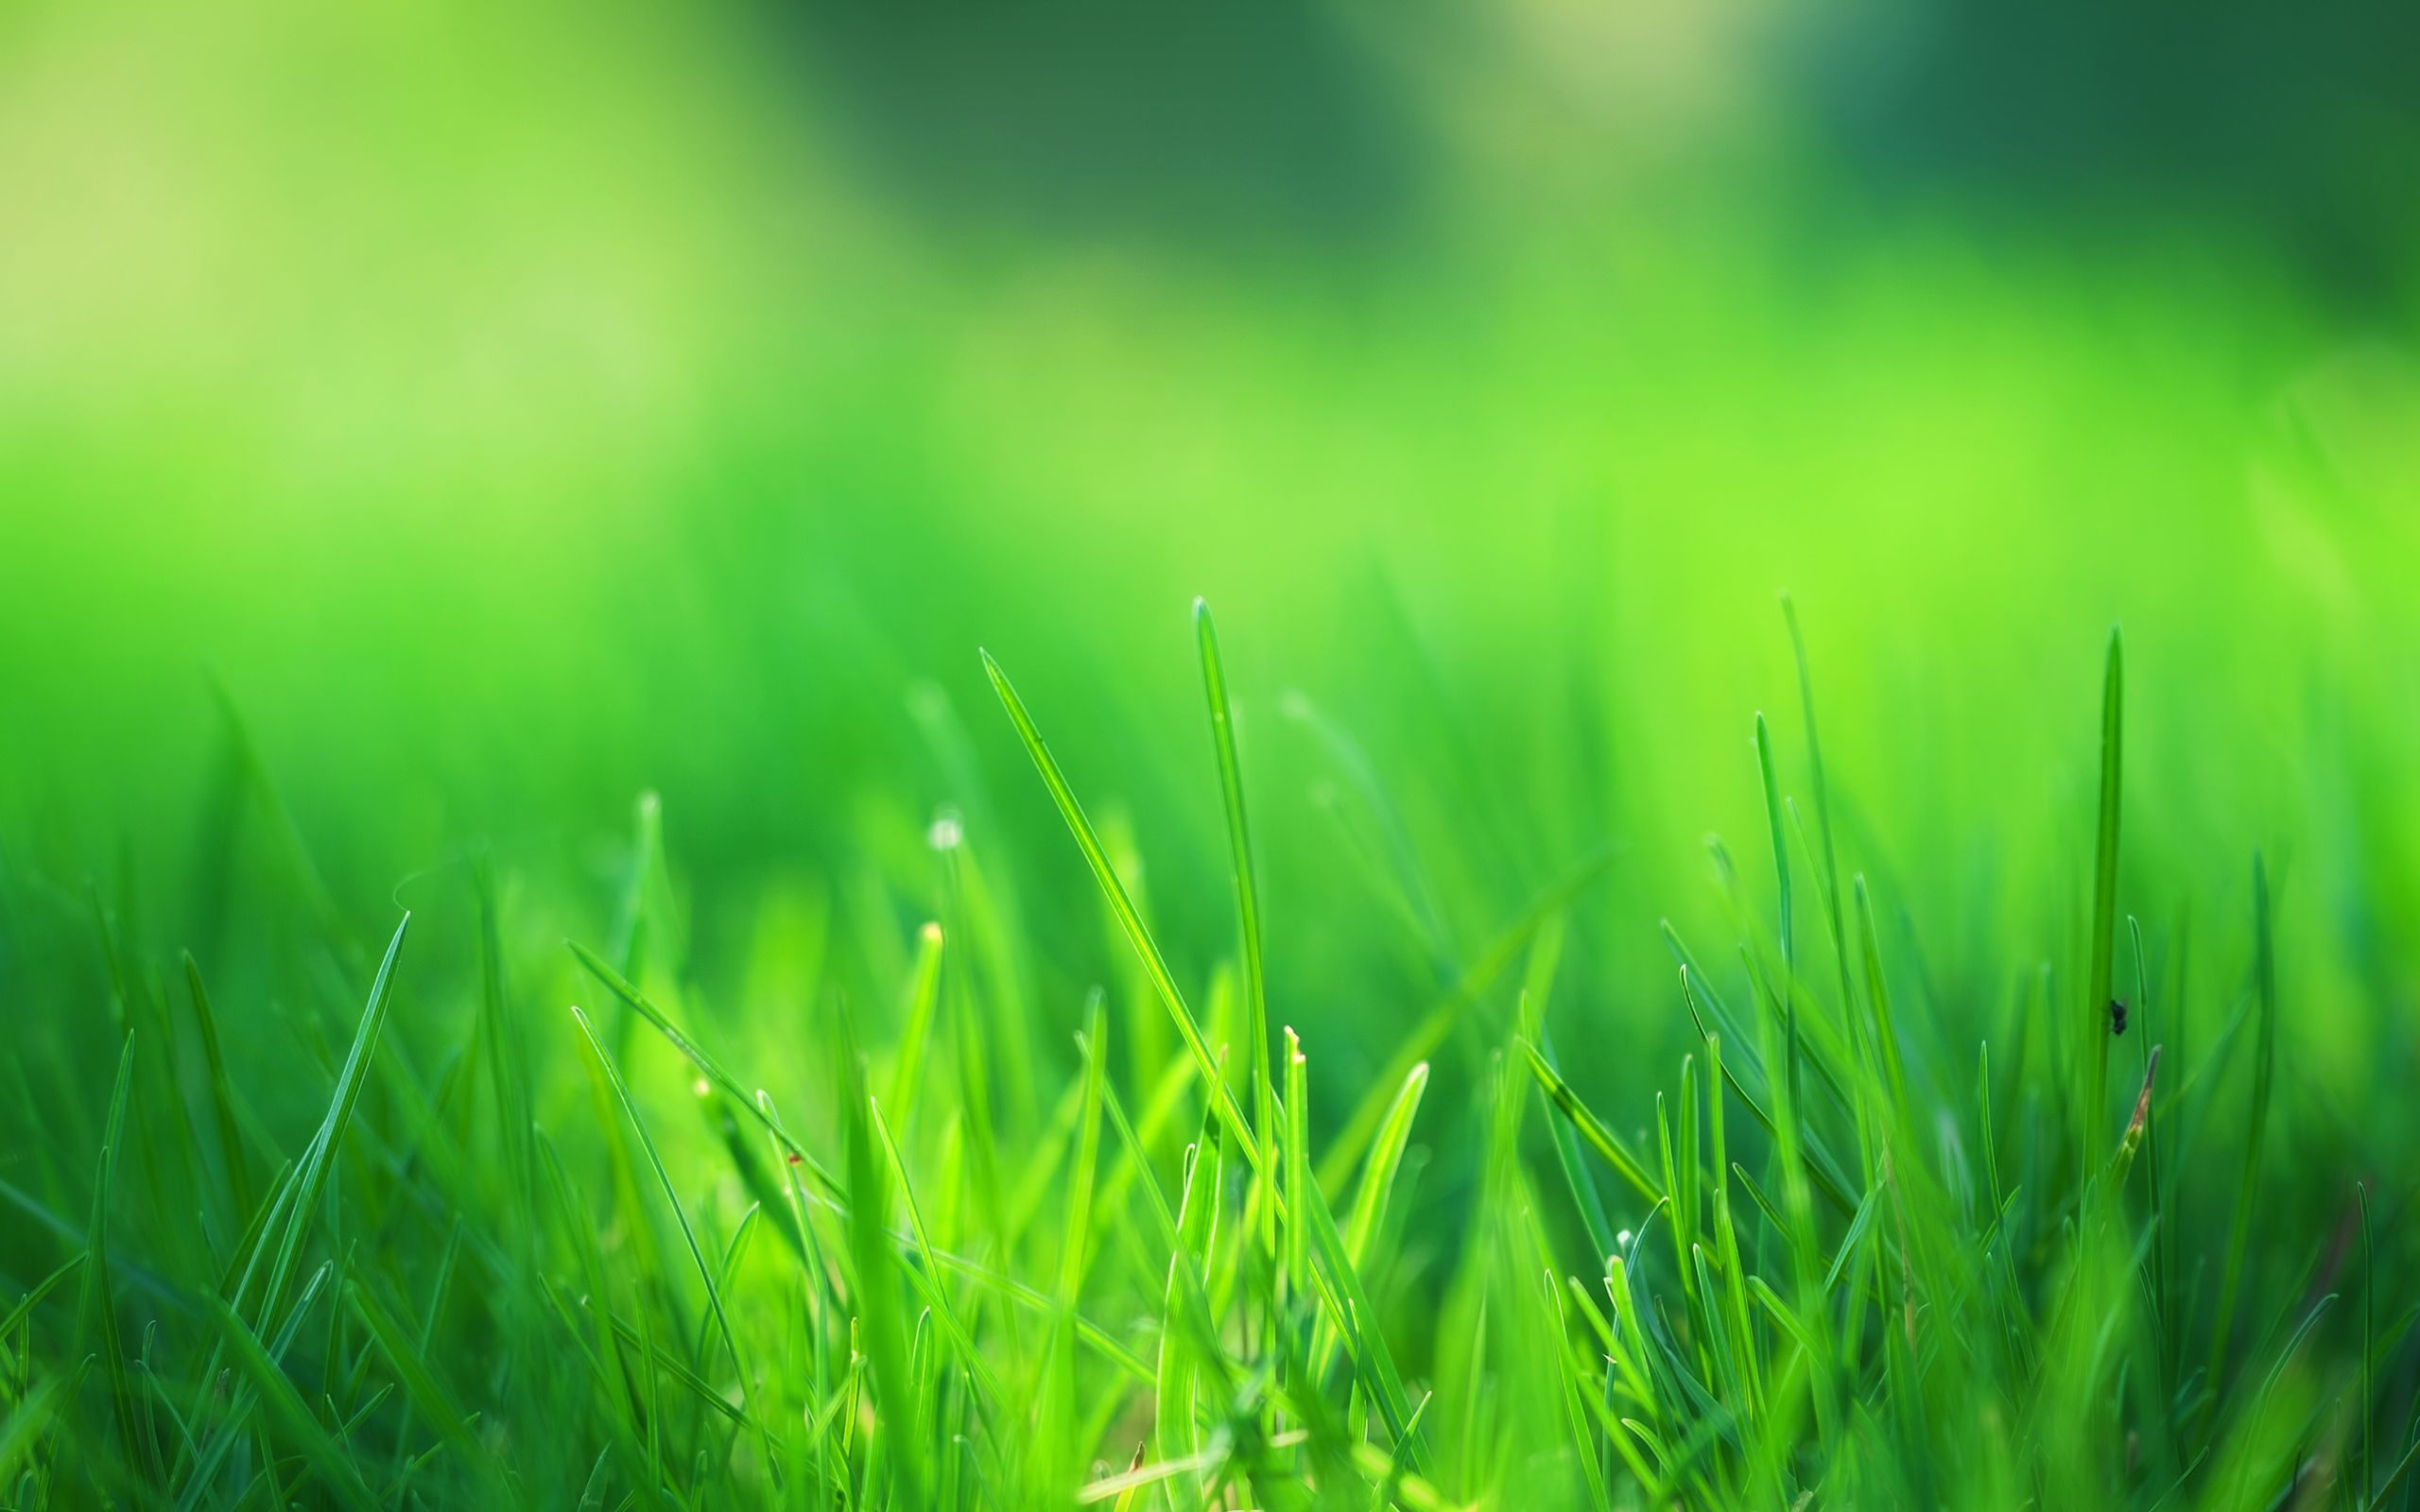 Hình nền máy tính cỏ xanh thẩm mỹ tạo sự cân bằng và hài hòa cho màn hình thiết bị của bạn. Hãy tìm kiếm ngay hình ảnh nền đẹp, tuyệt vời và hoàn toàn miễn phí đến từ trang web của chúng tôi.